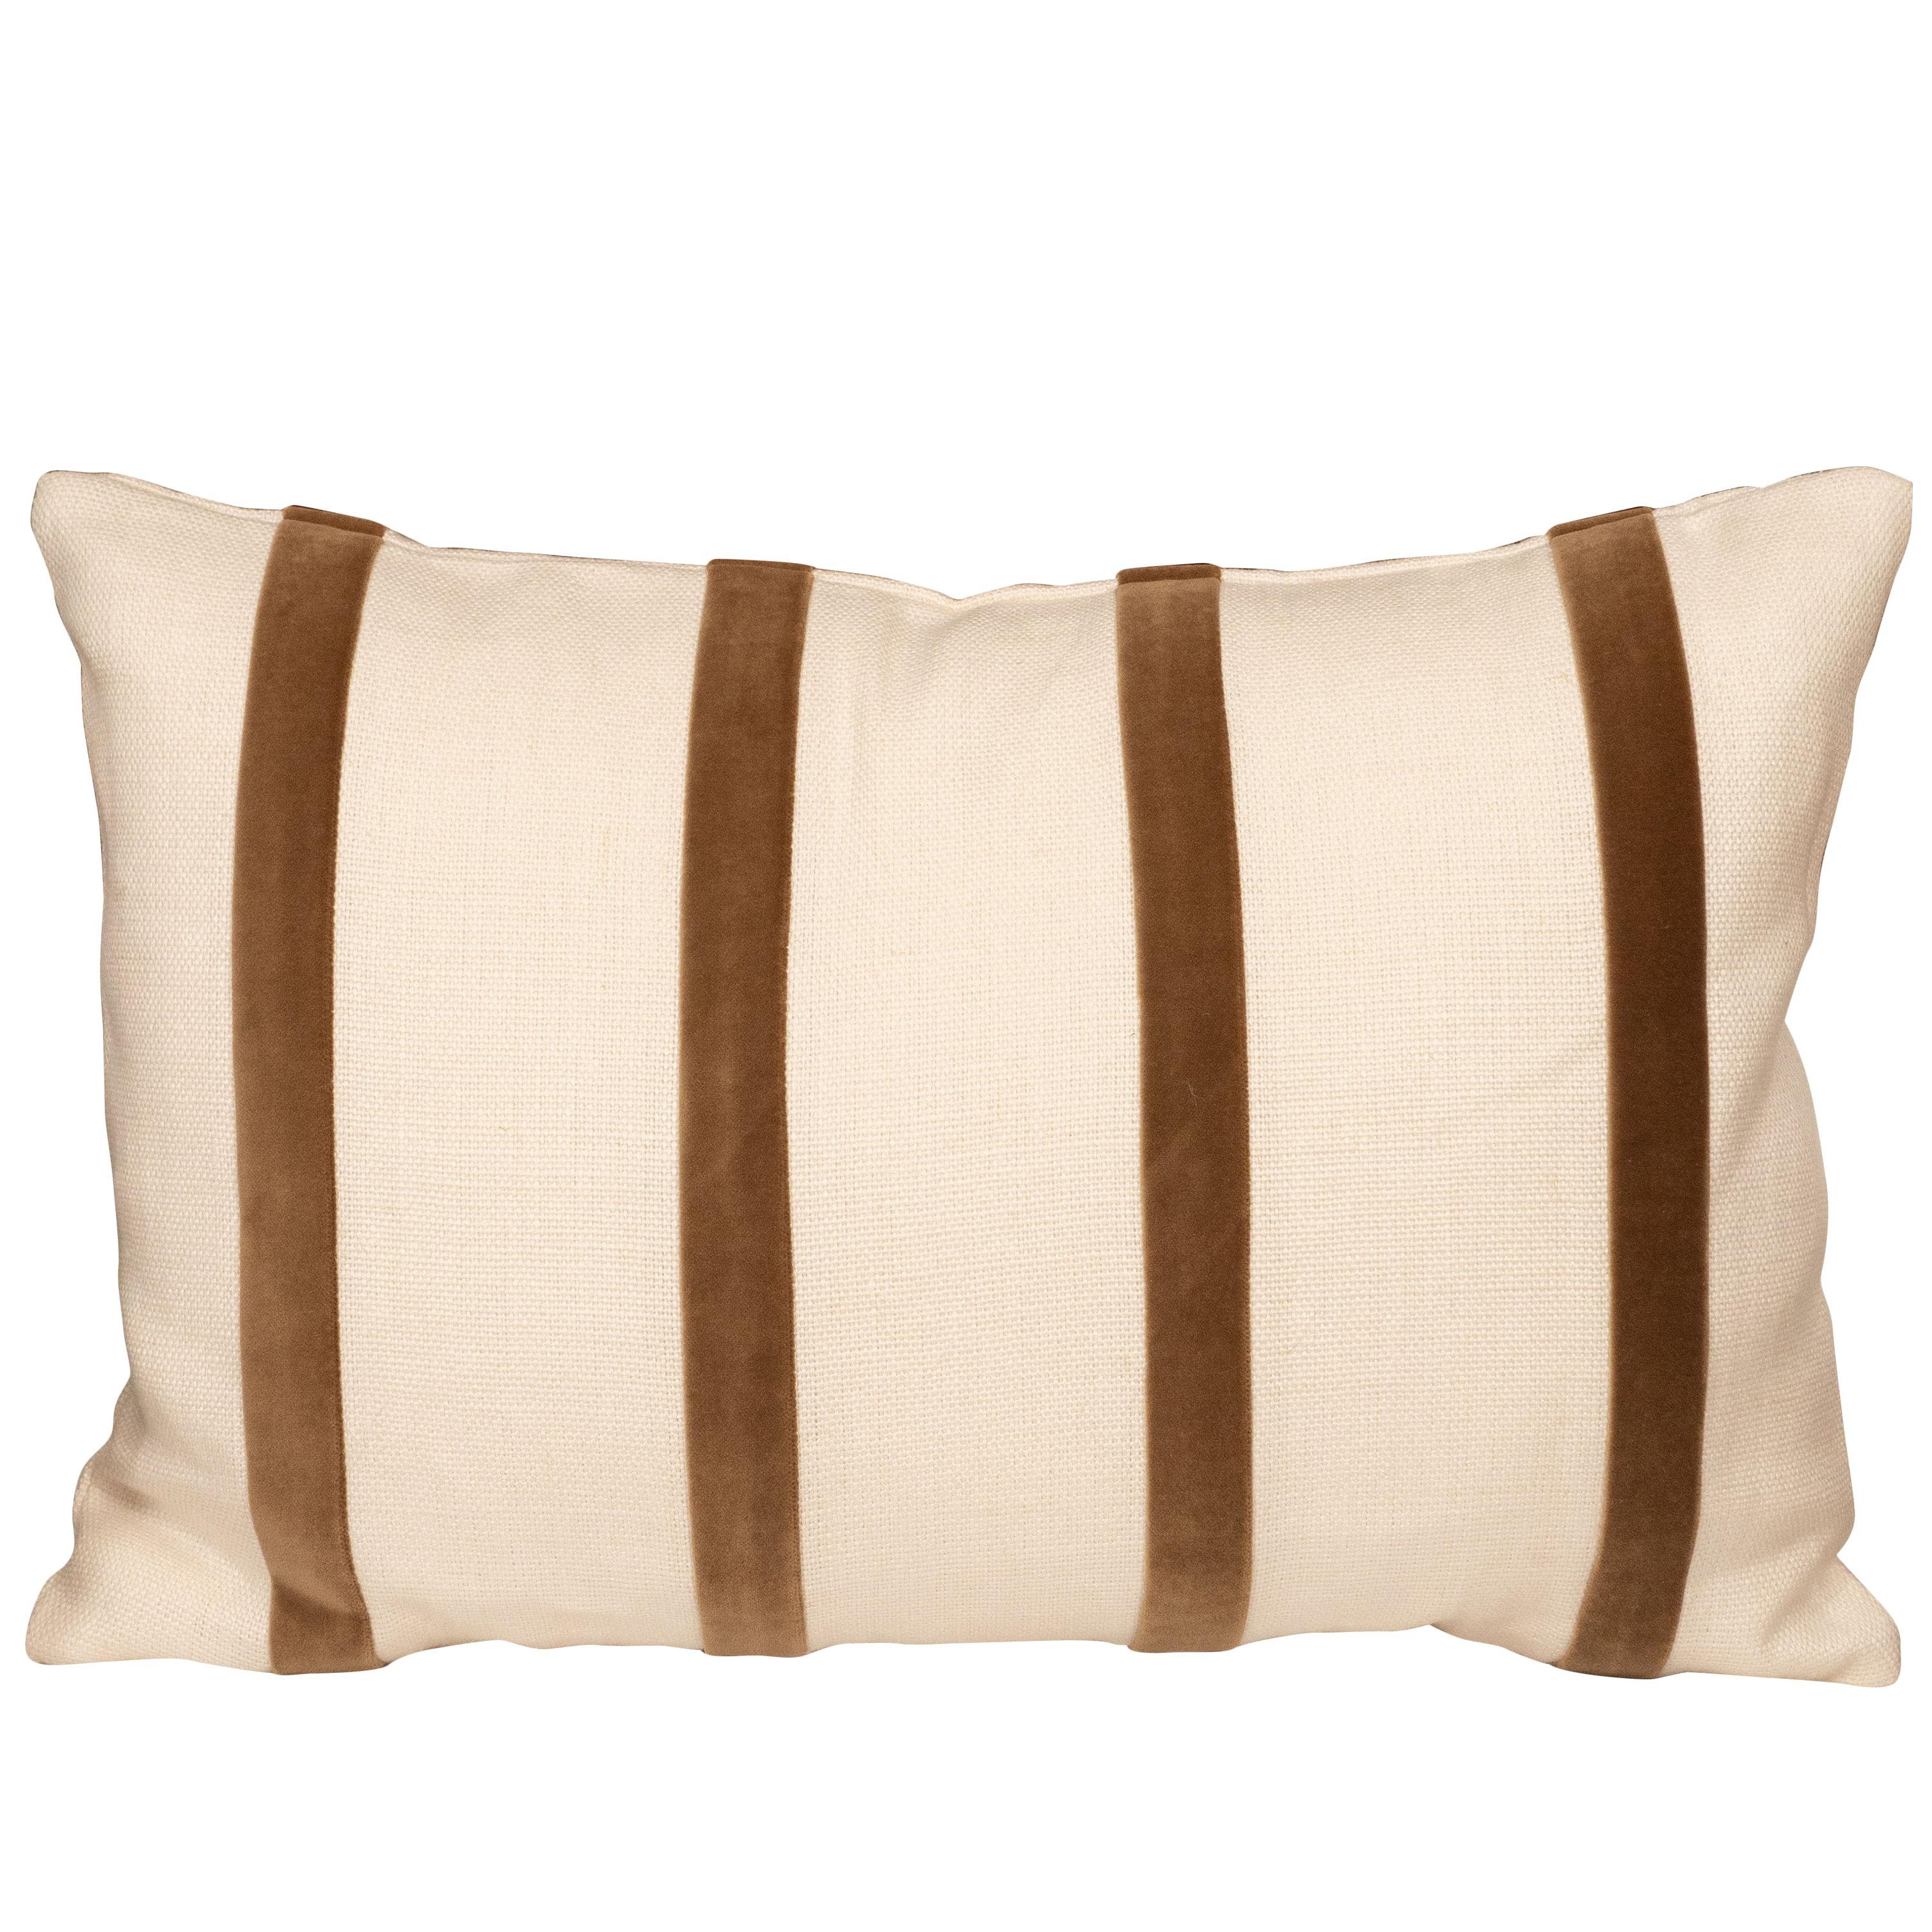 White Linen Pillow with Brown Velvet Stripe